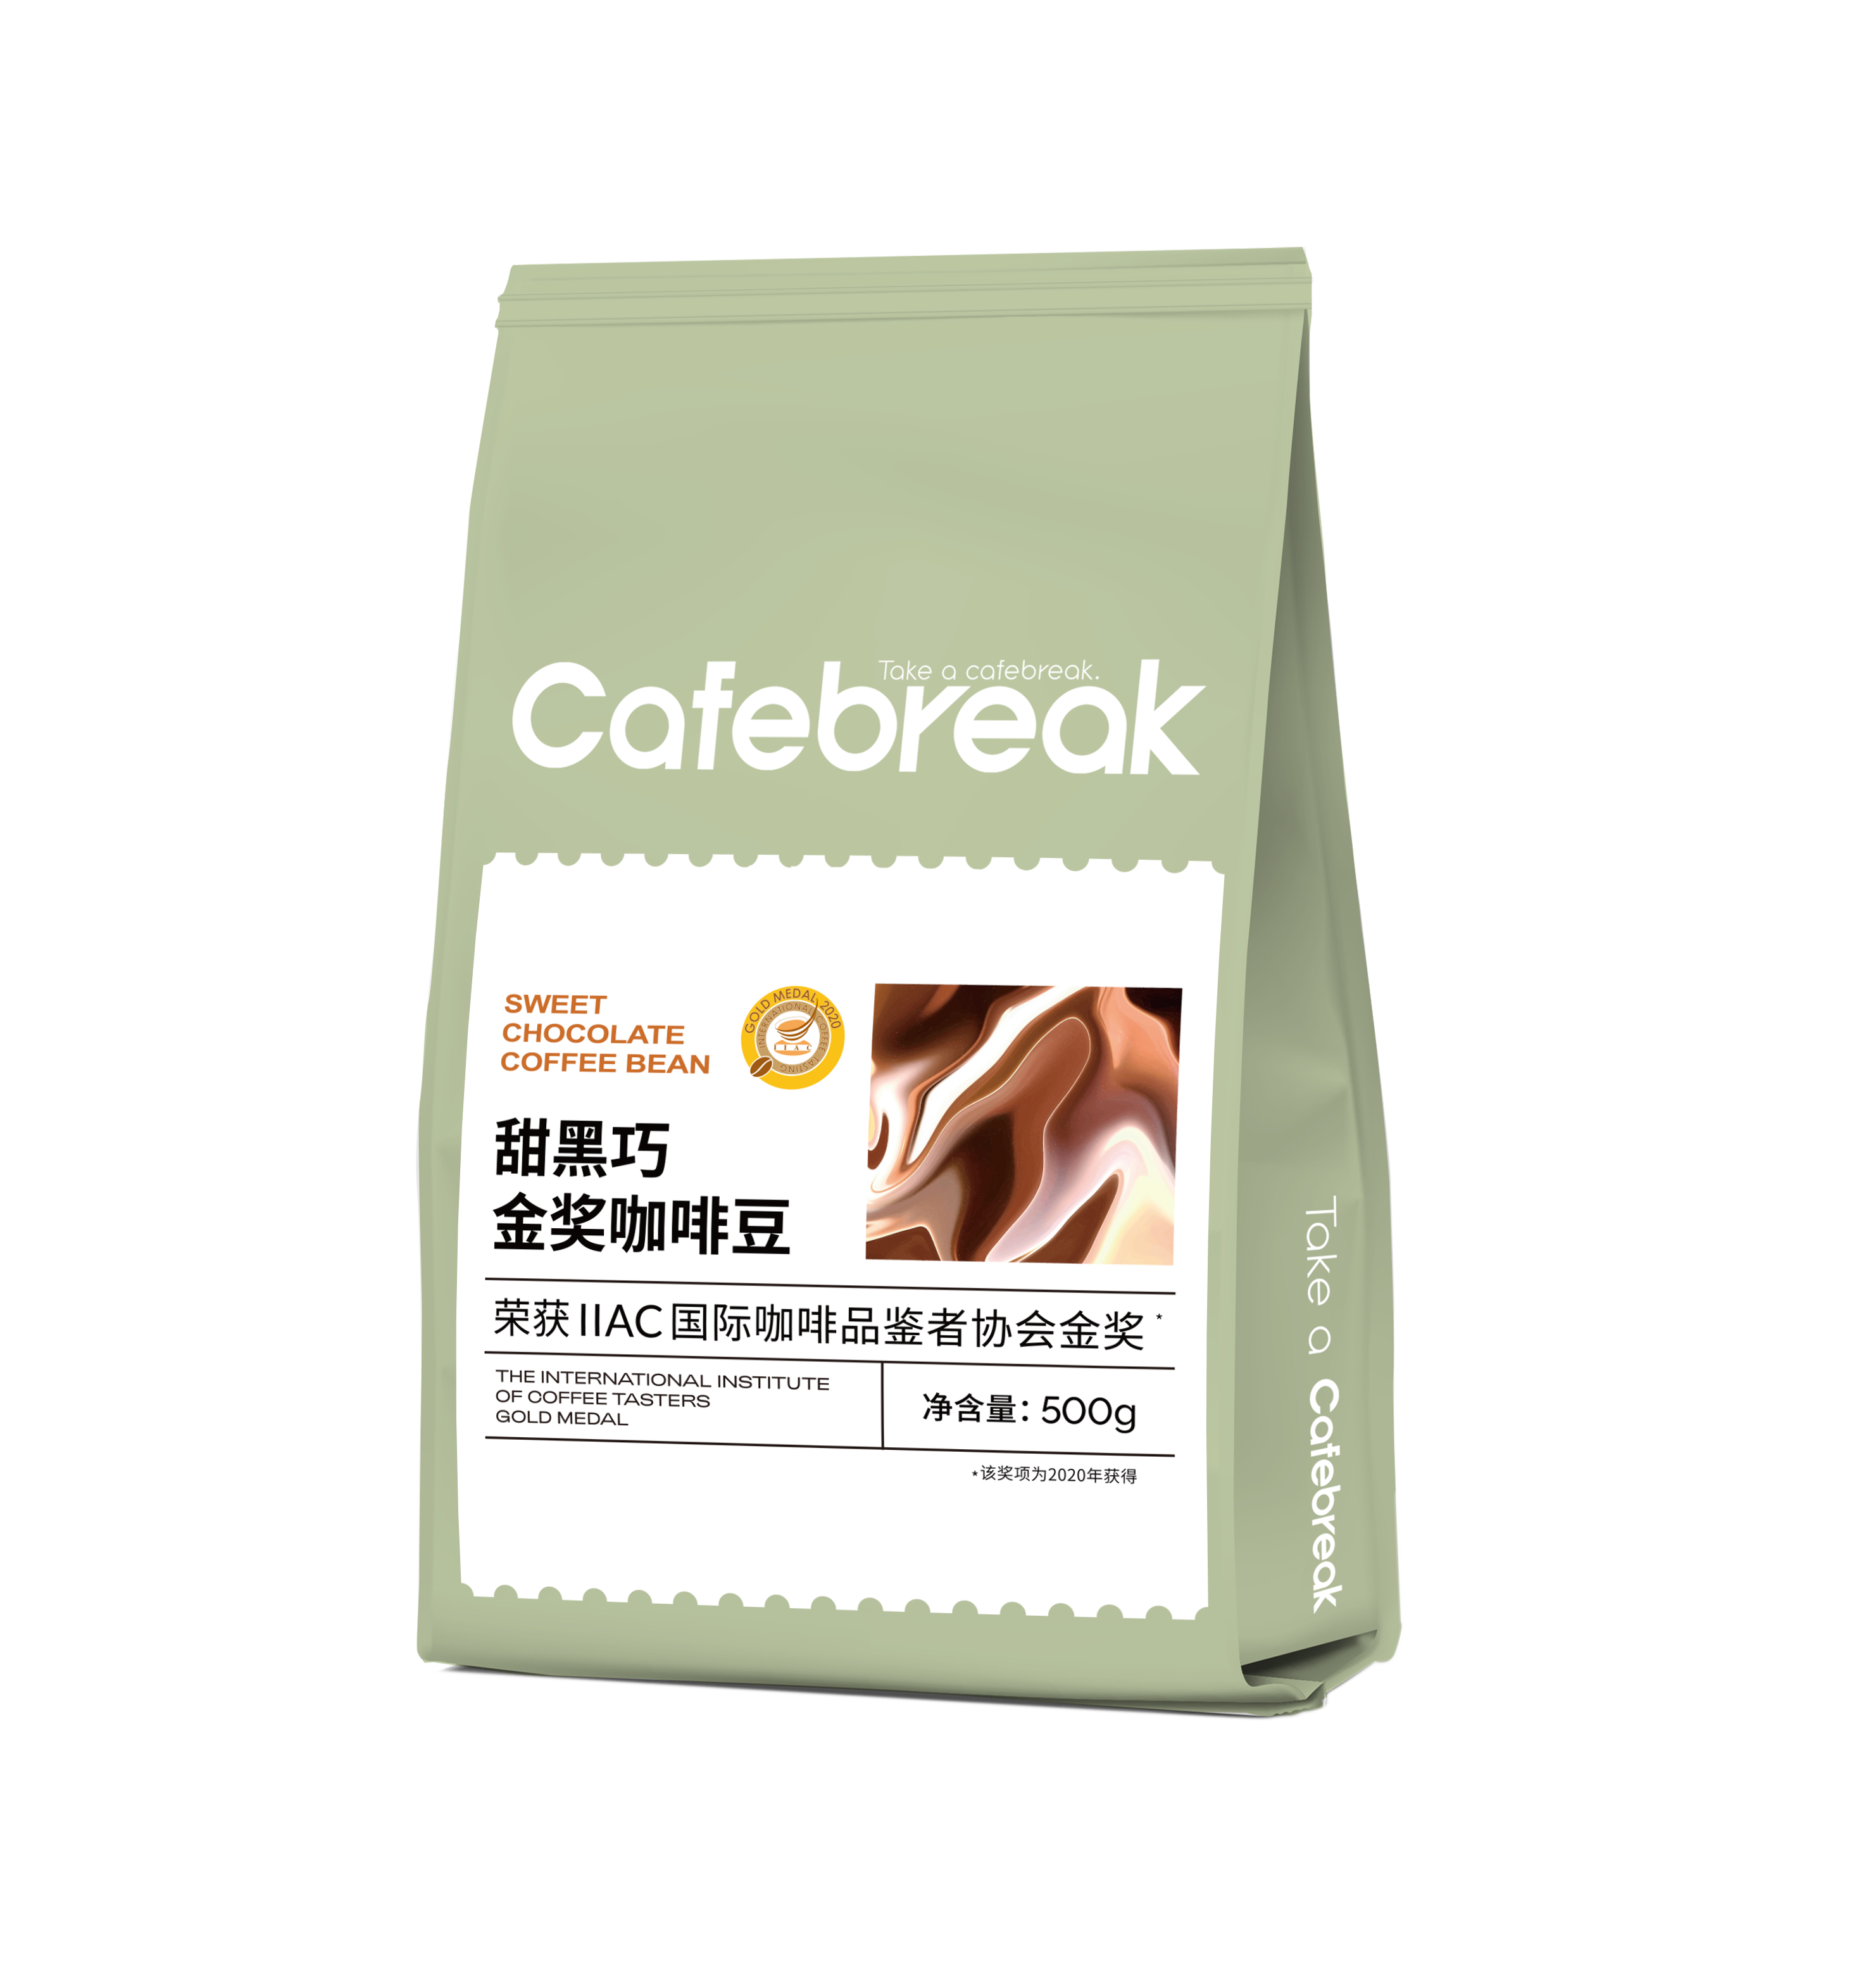 布蕾克cafebreak吨吨拼配意式拼配咖啡豆